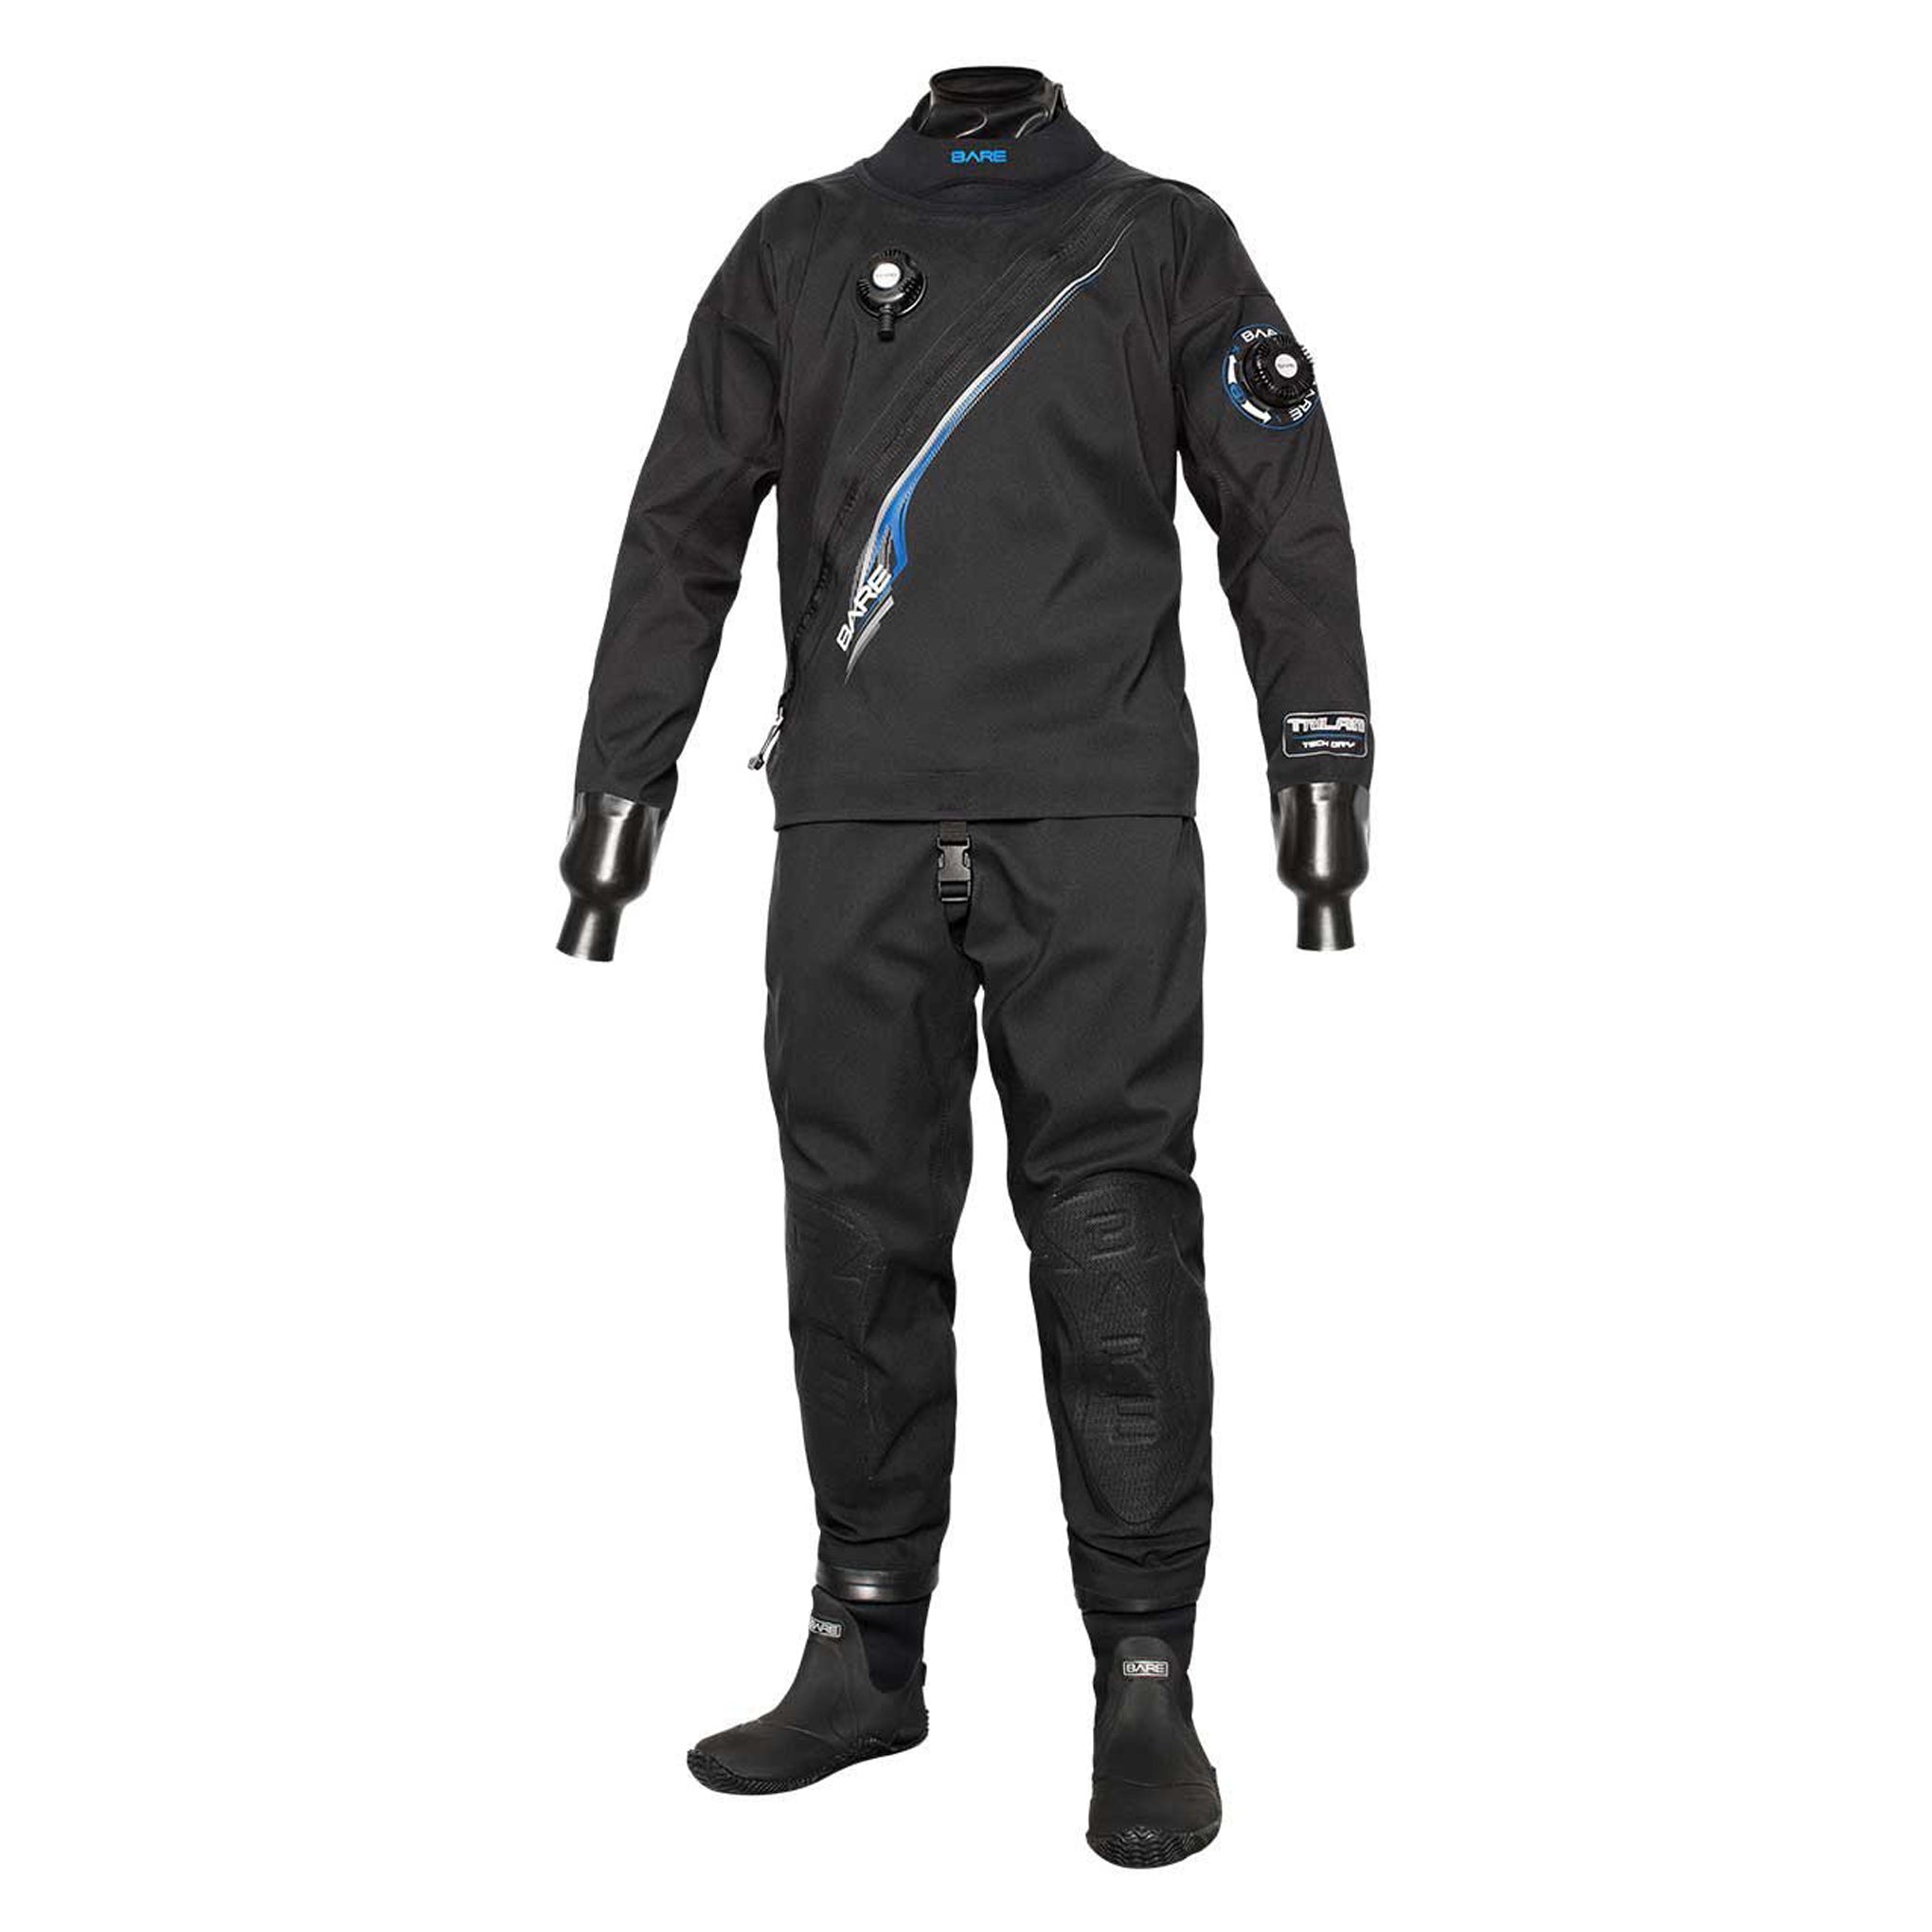 Trilam Tech Drysuit - Men's-Drysuit-Snorkeling, diver, sharkskin, scuba diving hk, warm protection, sharkskin, dive wear, bare wetsuit, aeroskin wetsuit, 浮潛